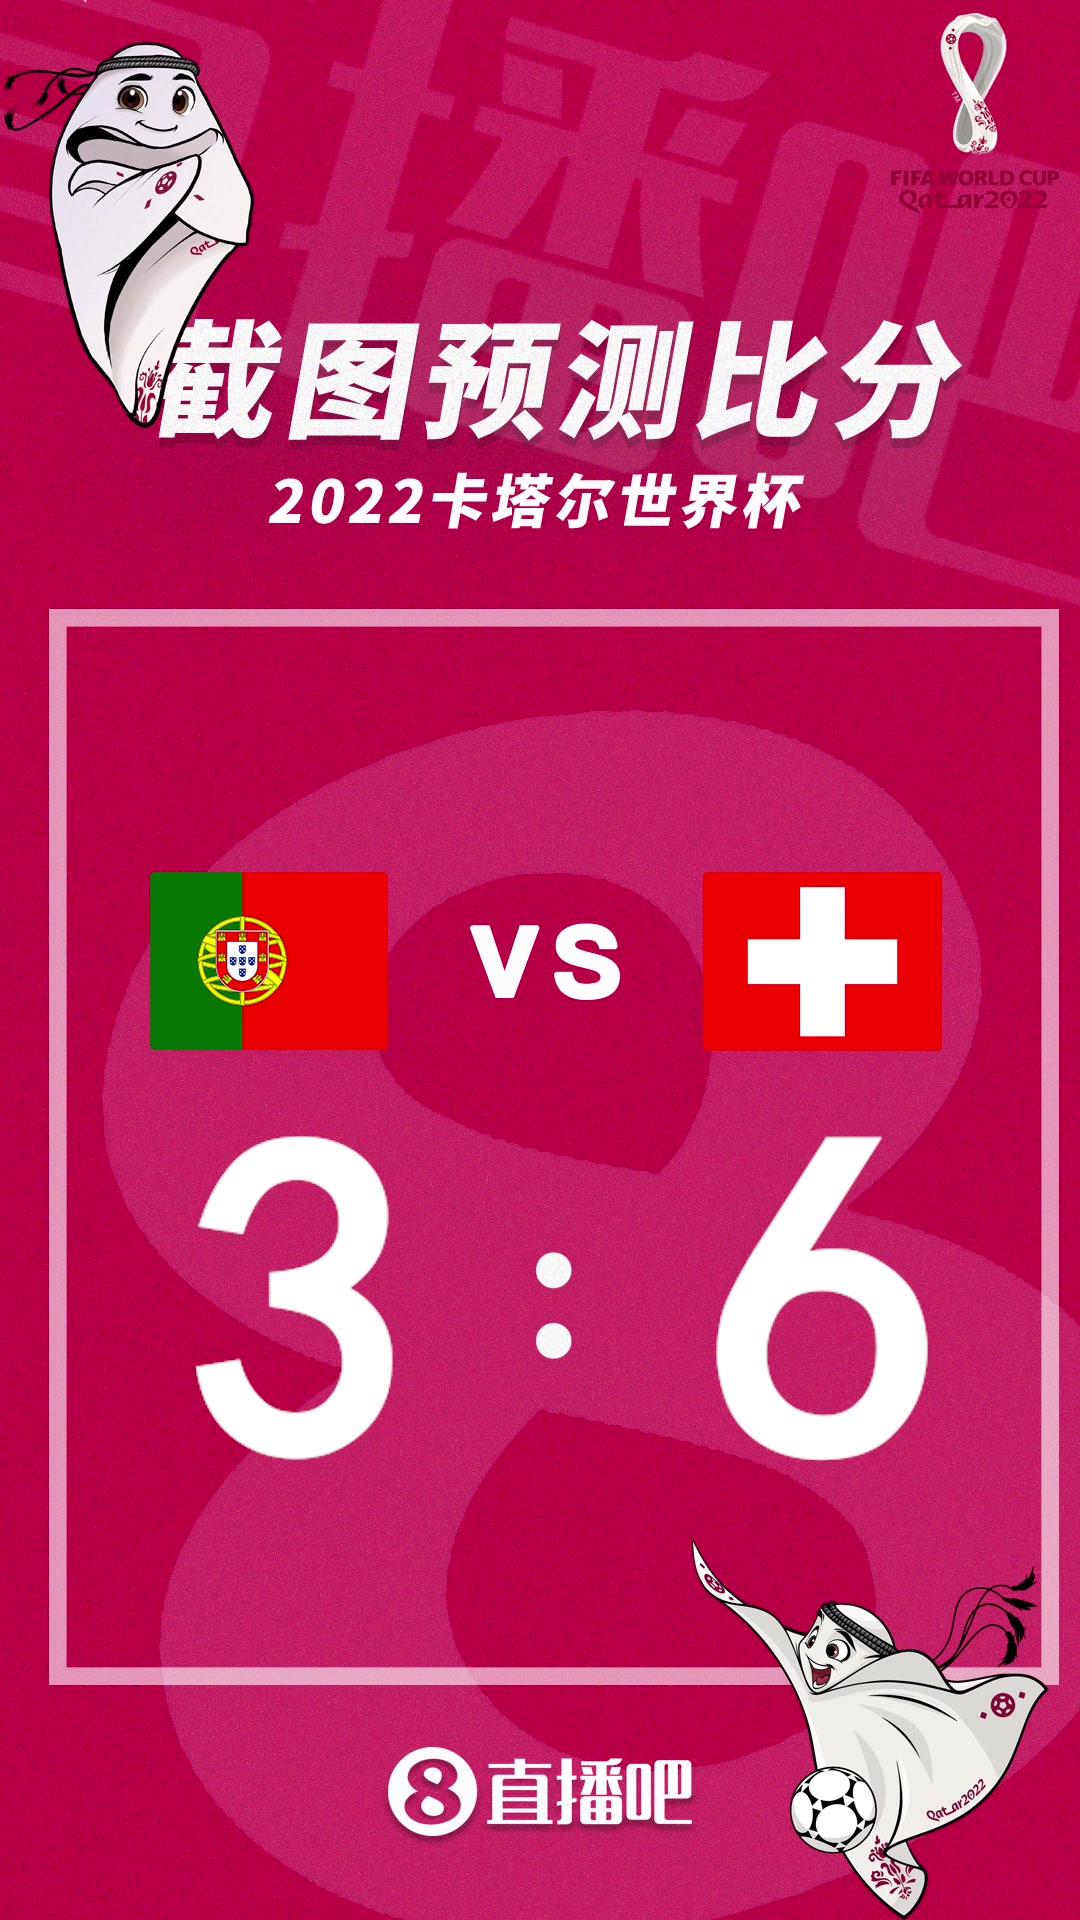 C罗能否取得进球？截图预测葡萄牙vs瑞士比分